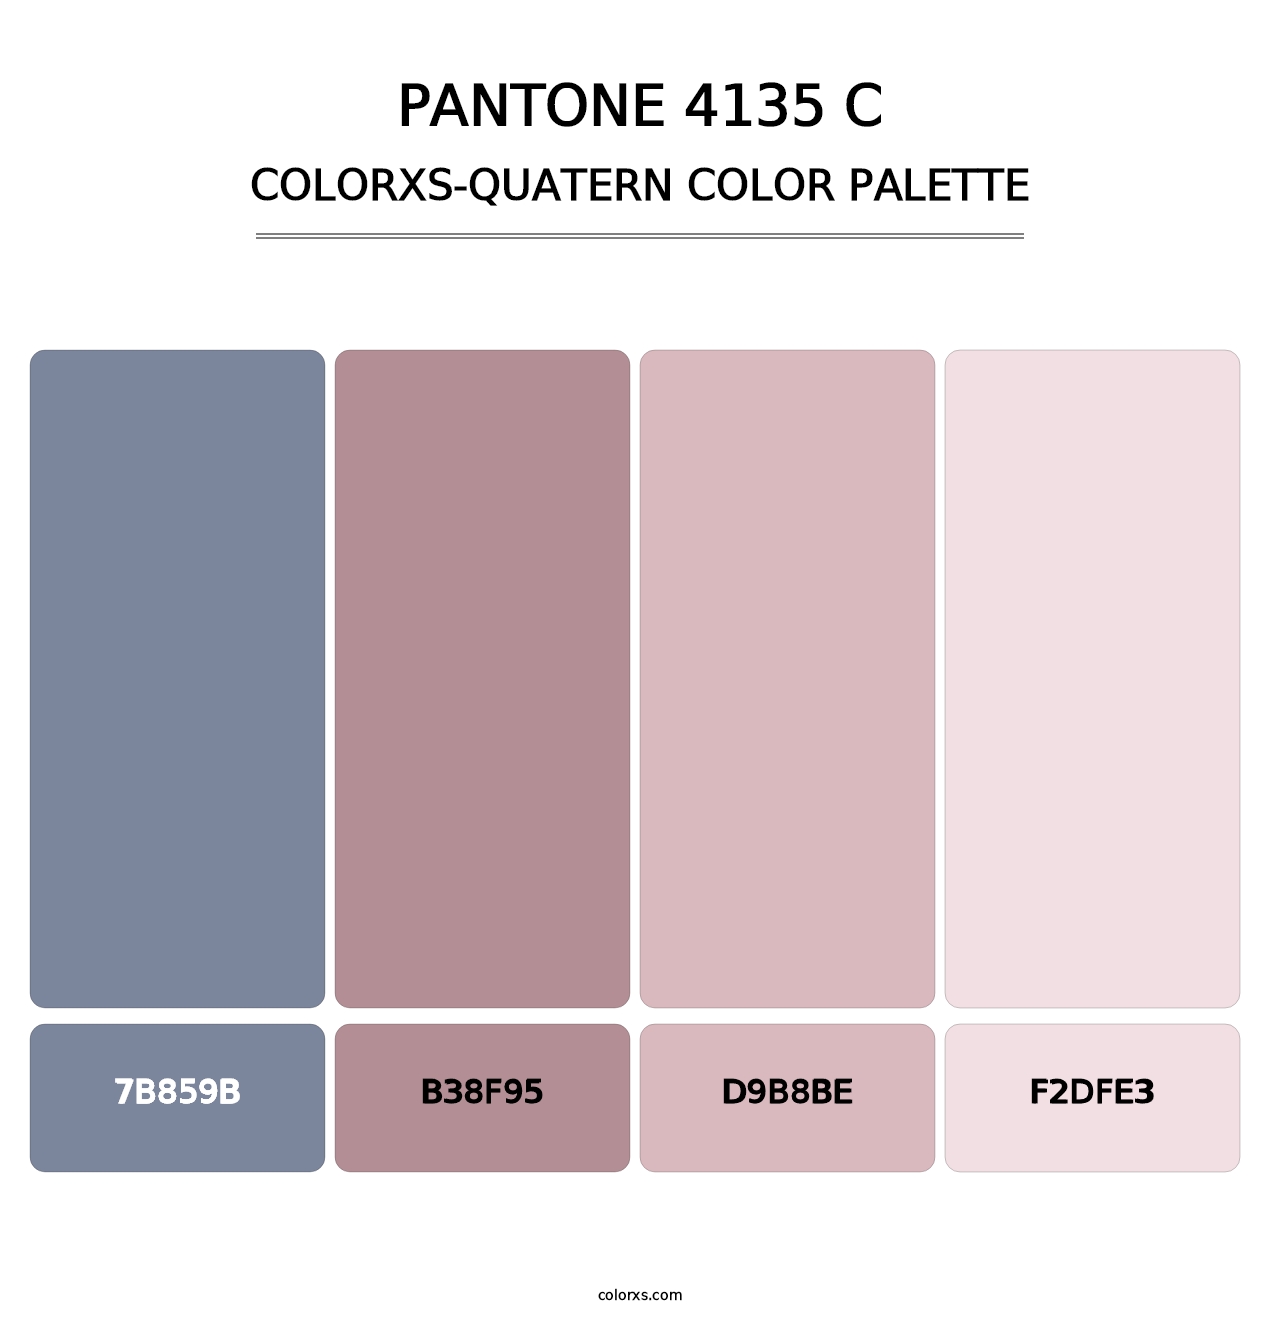 PANTONE 4135 C - Colorxs Quatern Palette